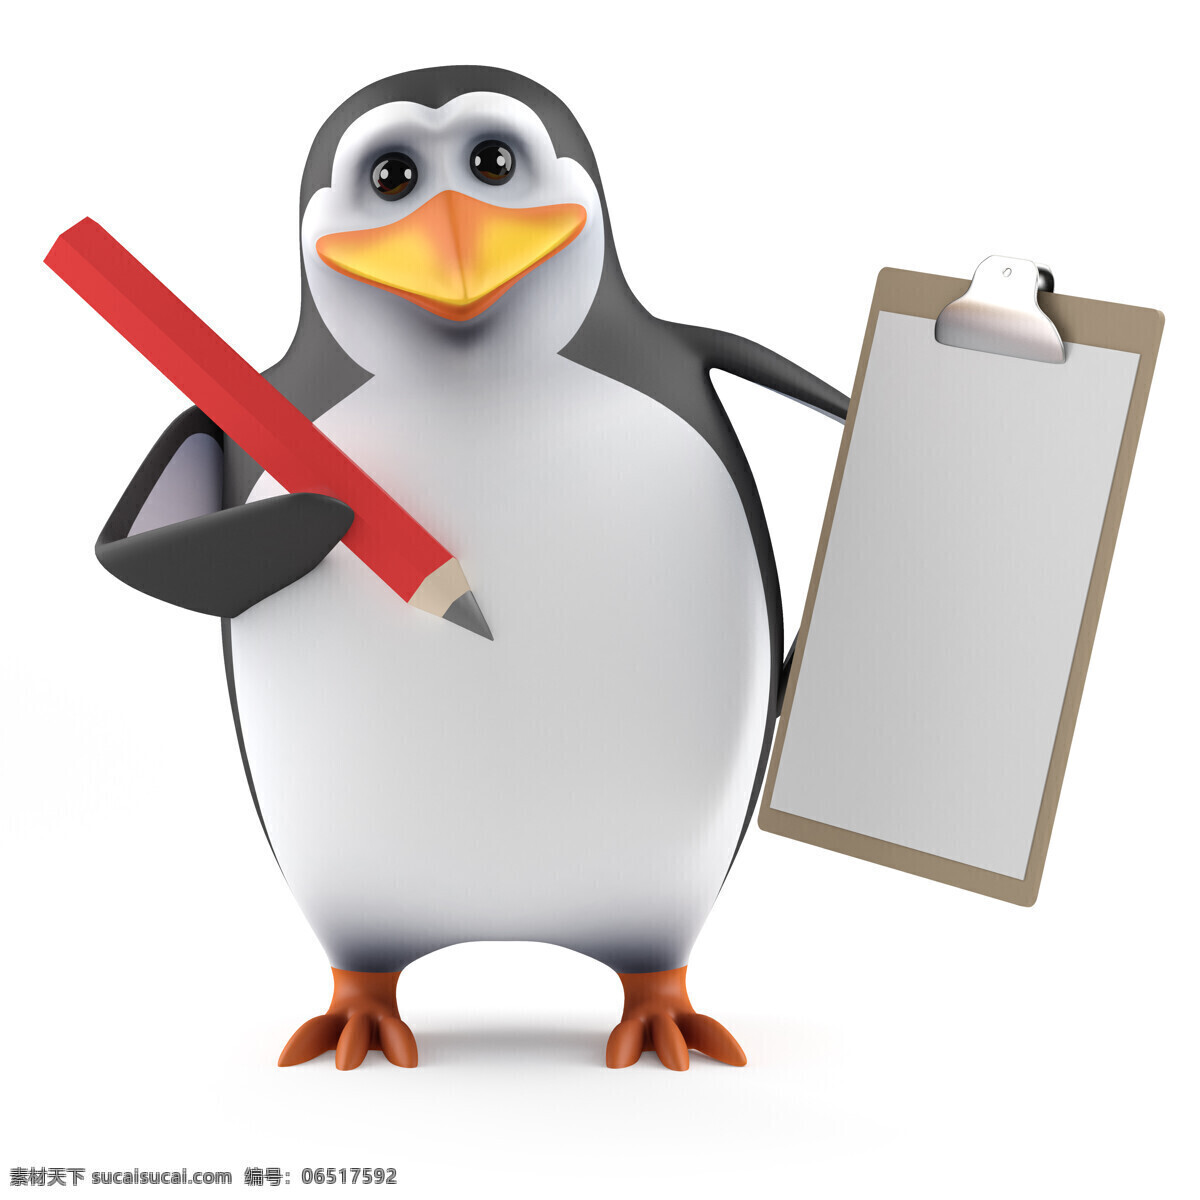 文件夹 企鹅 铅笔 卡通企鹅 3d企鹅 卡通动物 3d动物 陆地动物 生物世界 白色